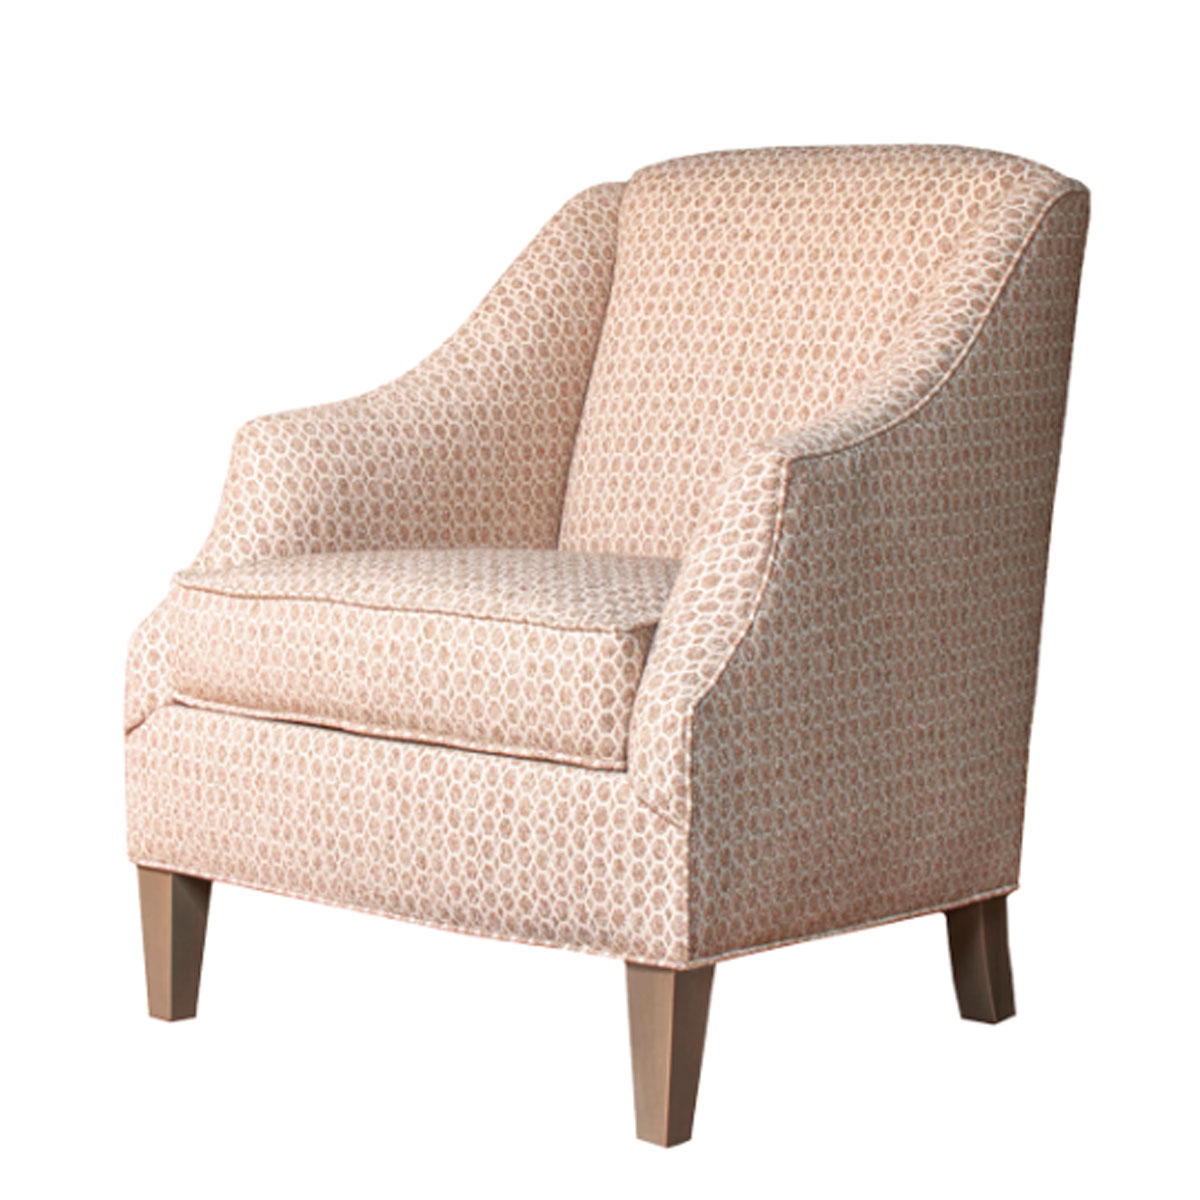 Hallagan Furniture 386 Chair